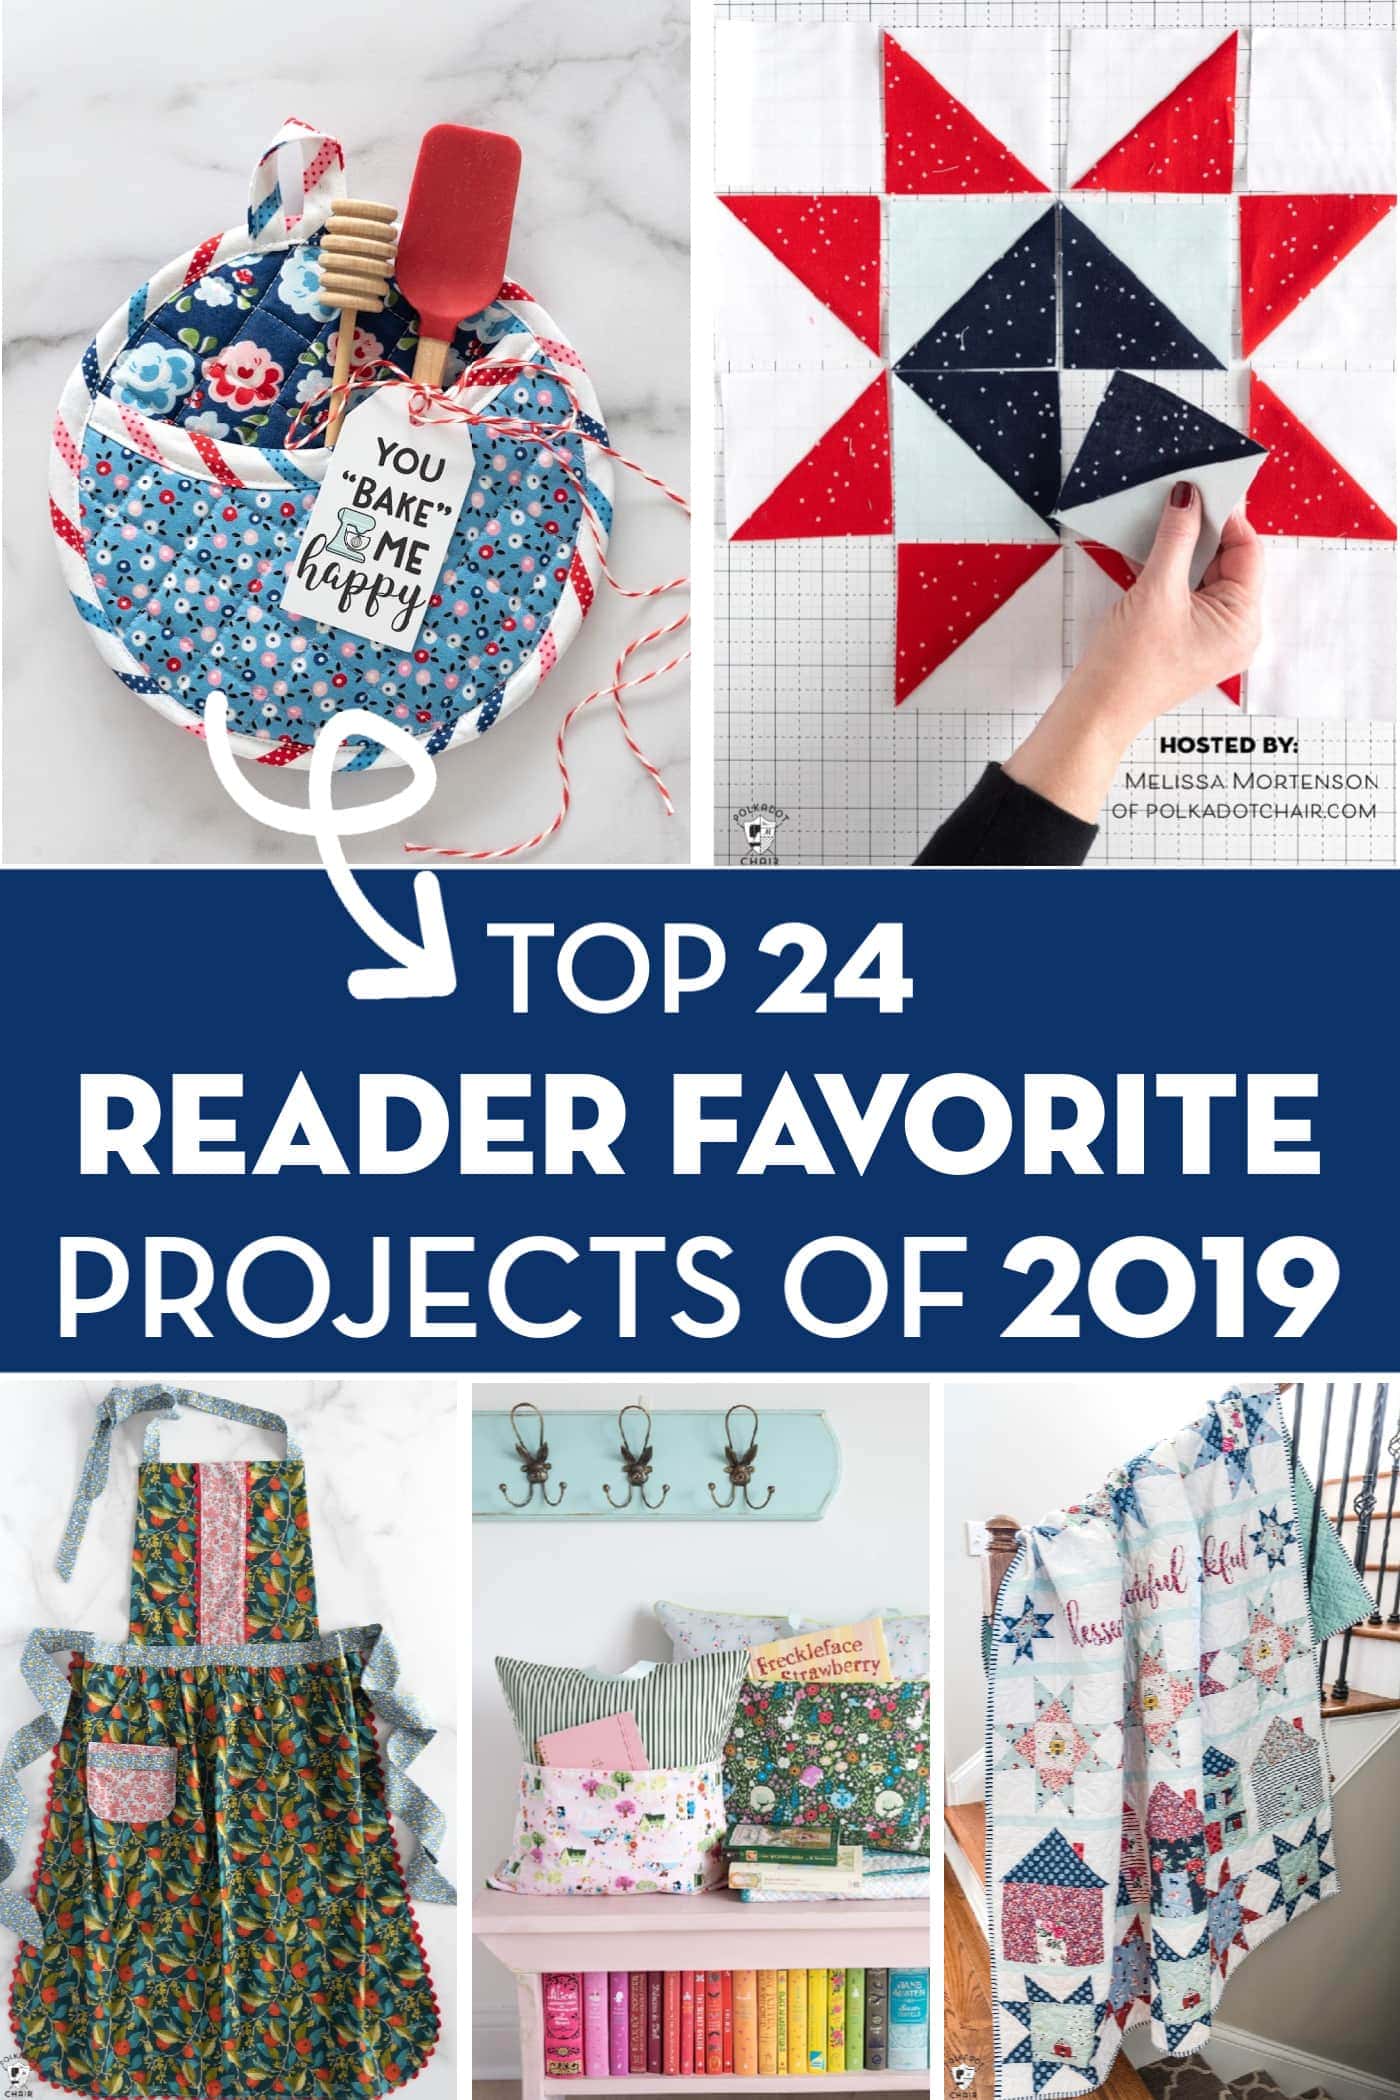 Image de collage avec les projets préférés des lecteurs de 2019. De droite à gauche, manique, courtepointe étoilée, tablier, oreiller de lecture et courtepointe restons à la maison.